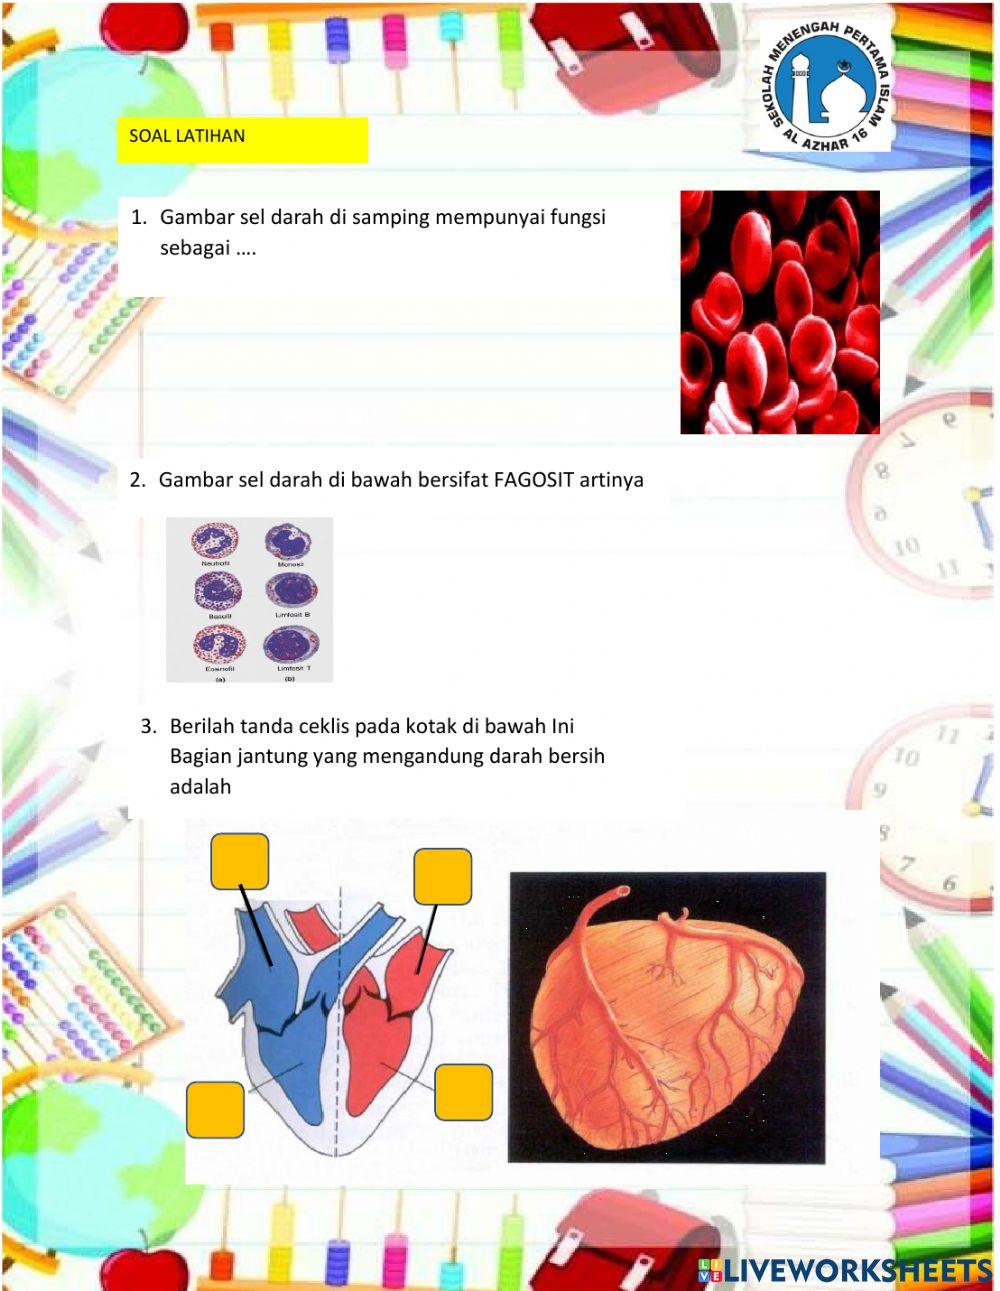 Sistem peredaran darah